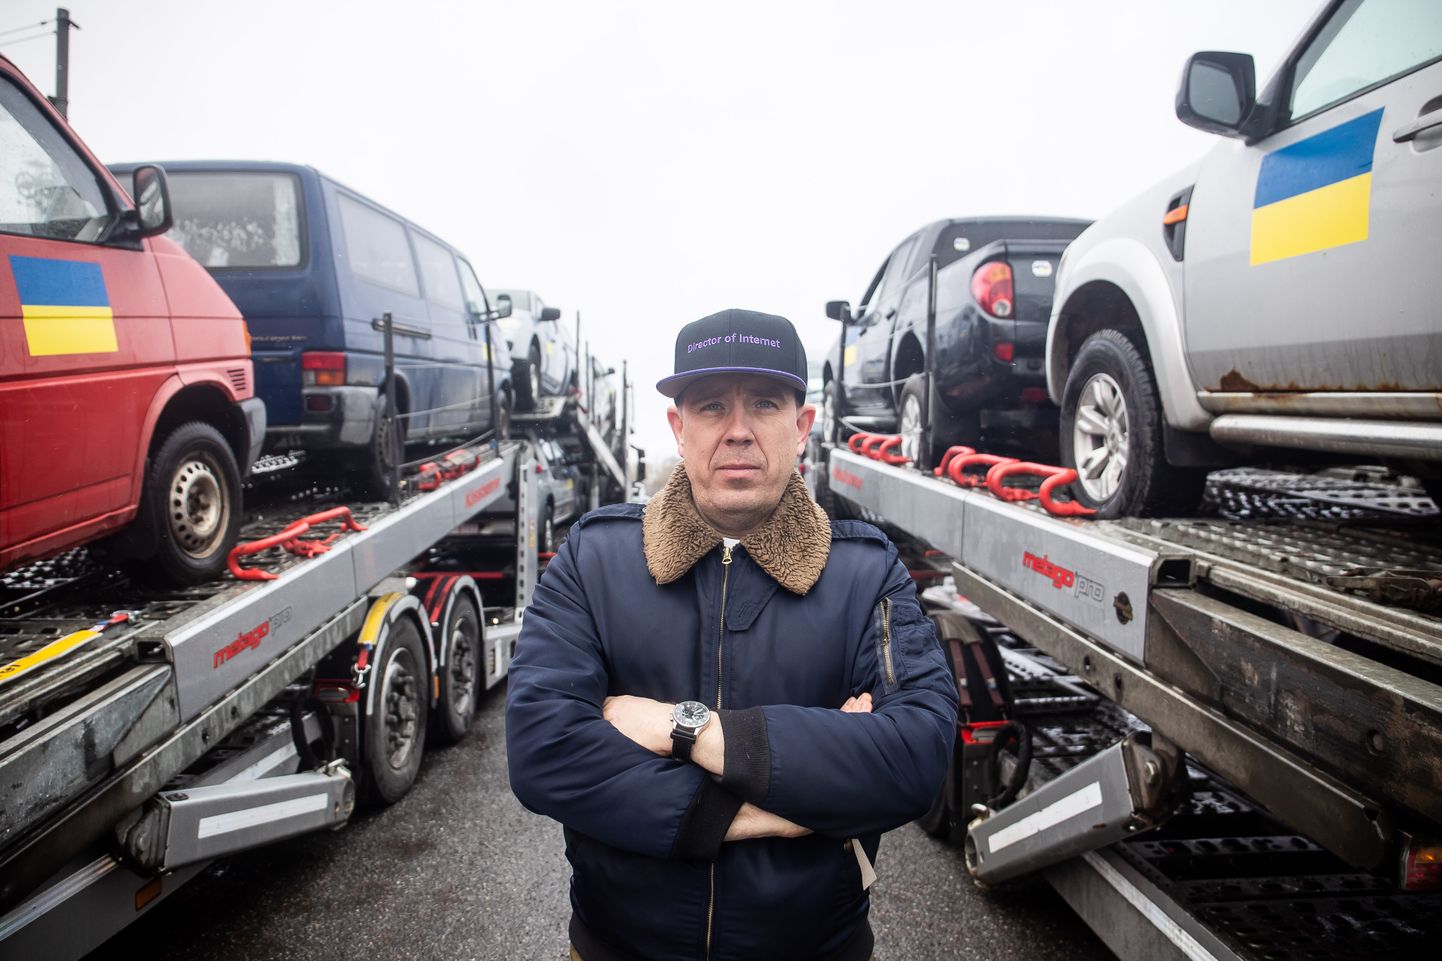 Предприниматель и инициатор акции Рагнар Сассь на фоне пожертвованных машин.